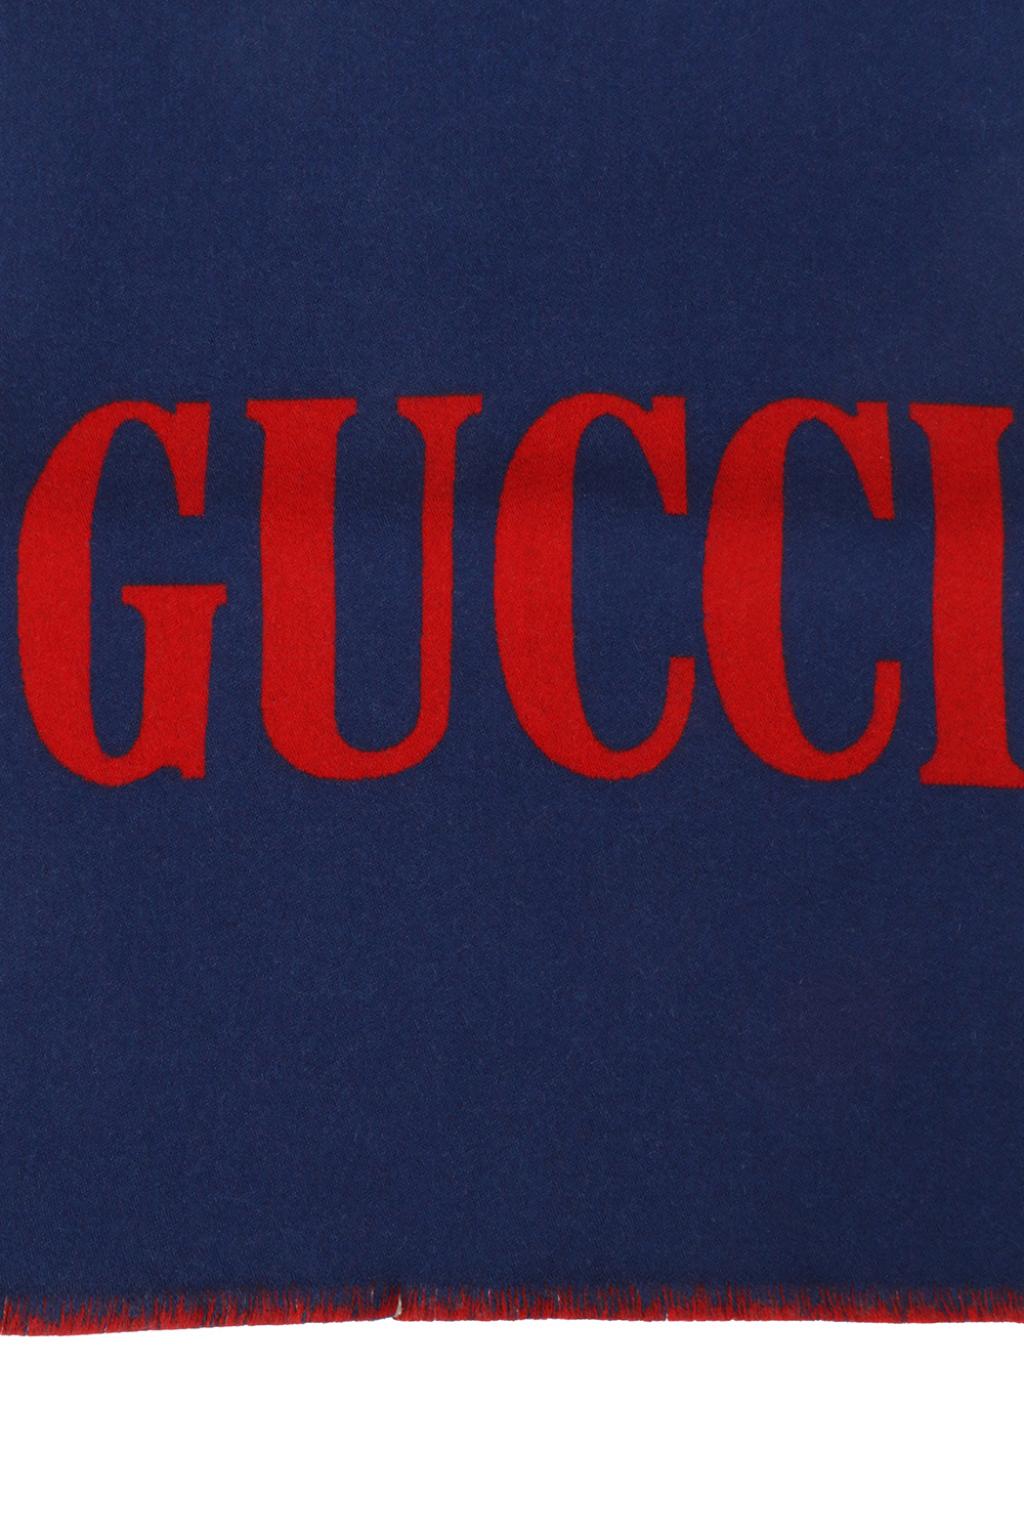 Gucci Gucci adidas collaboration